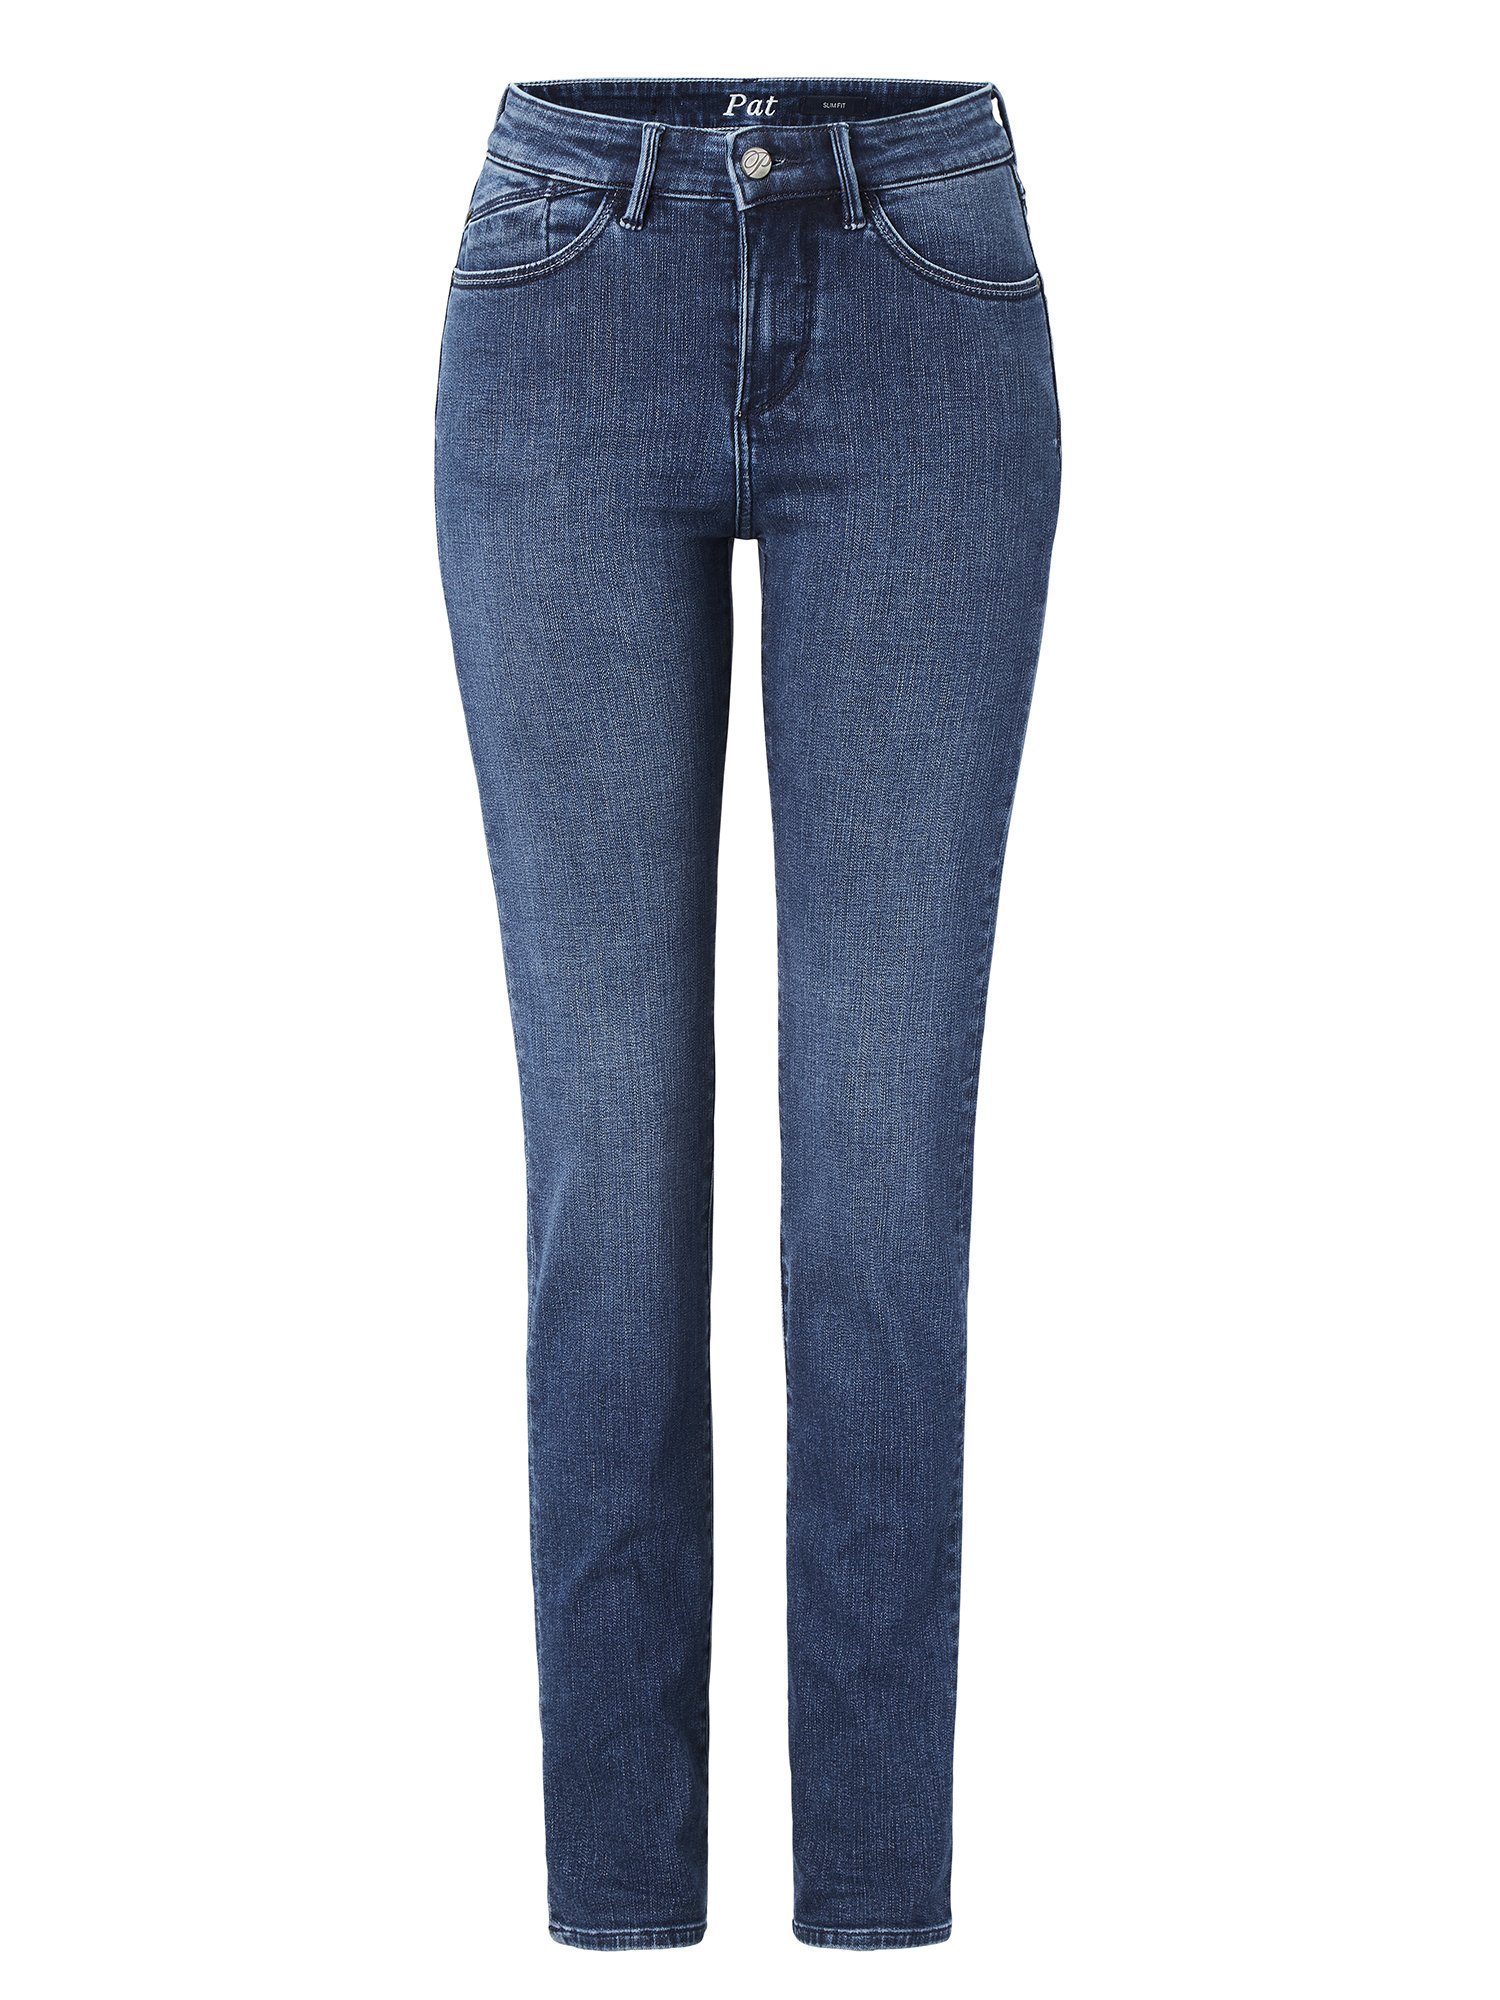 Jeans Stretchanteil PAT Slim-Fit blue use Slim-fit-Jeans mit Paddock's dark Soft Denim stone